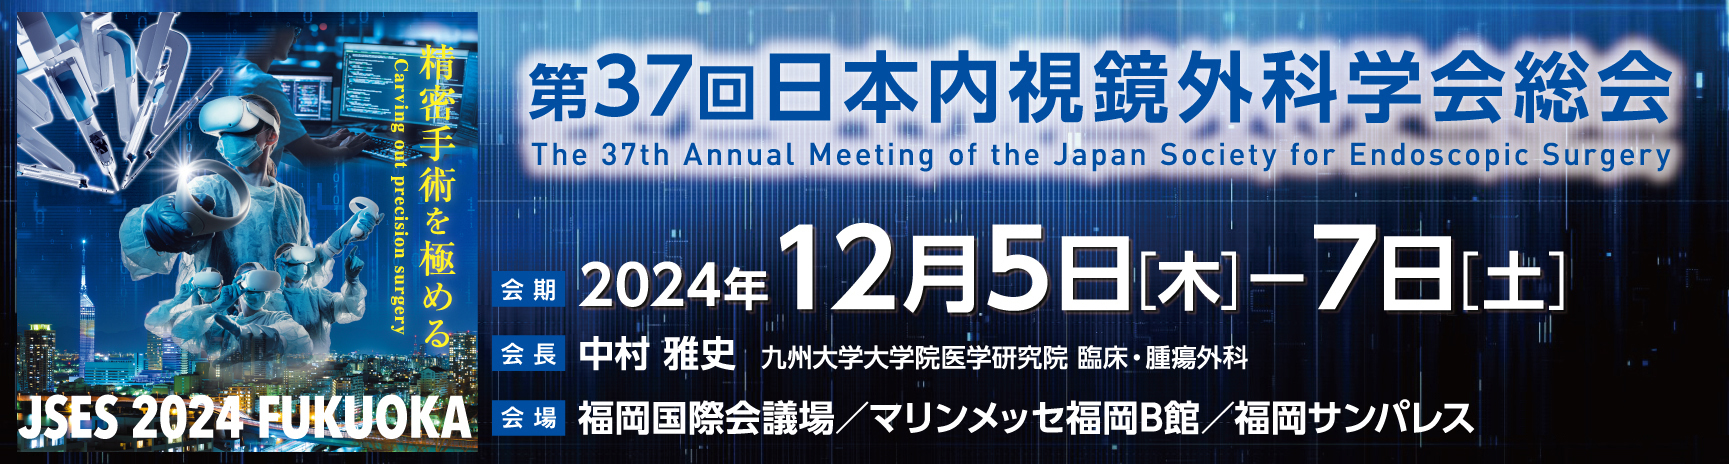 第36回日本内視鏡外科学会総会